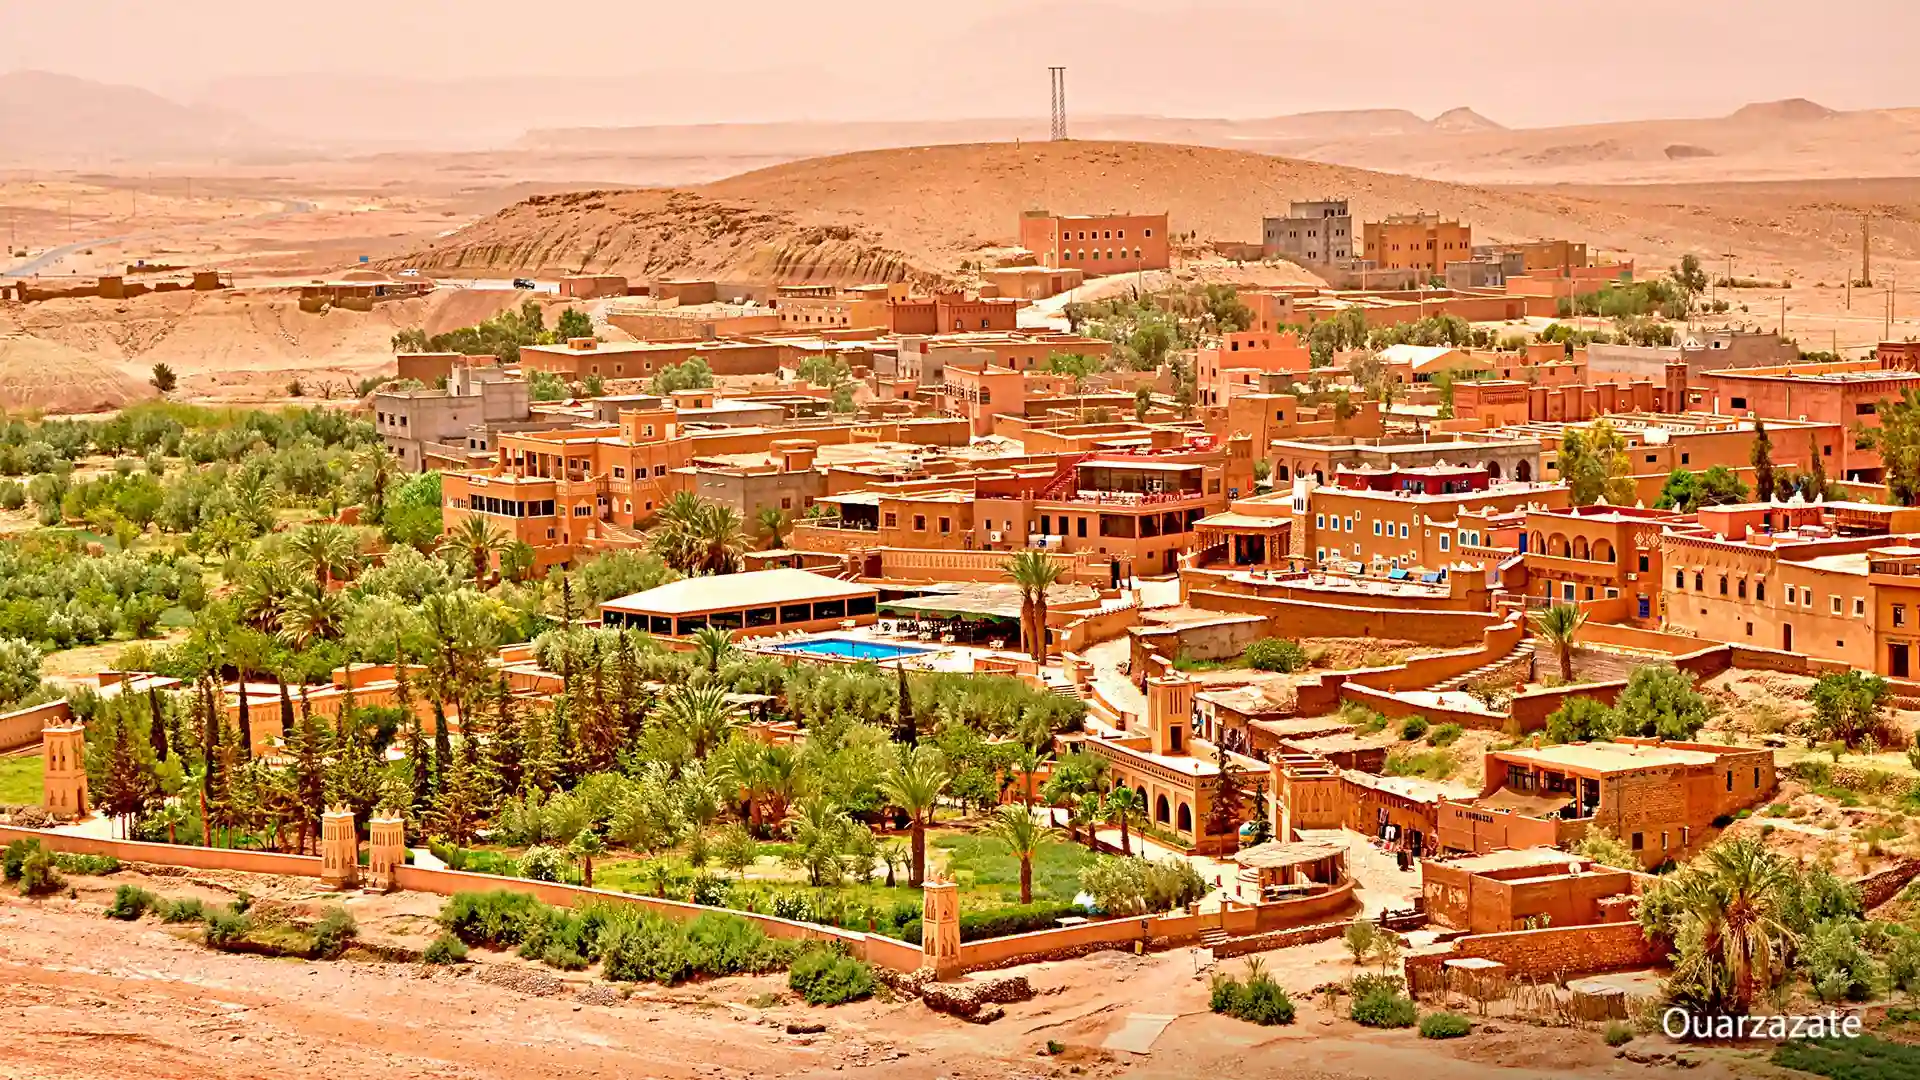 Ouarzazate
Morocco
Agadir Morocco